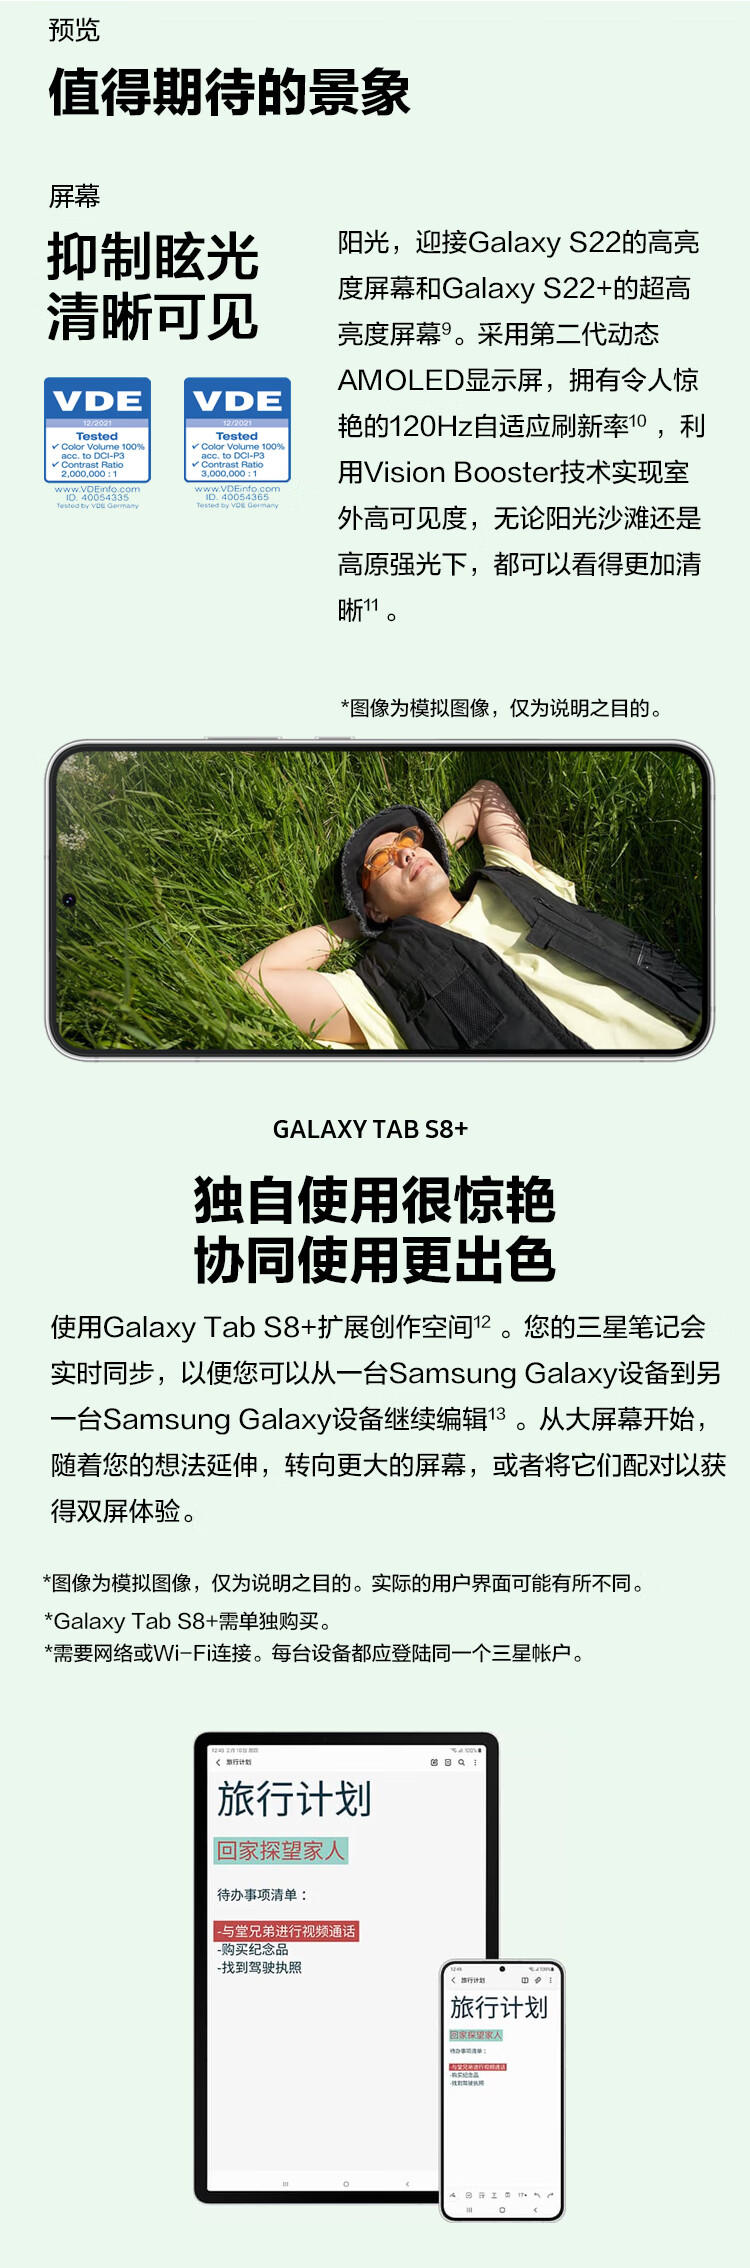 三星 SAMSUNG Galaxy S22 超视觉夜拍系统超清夜景 超电影影像系统 超耐用精工设计 8GB+128GB 雾松绿 5G手机